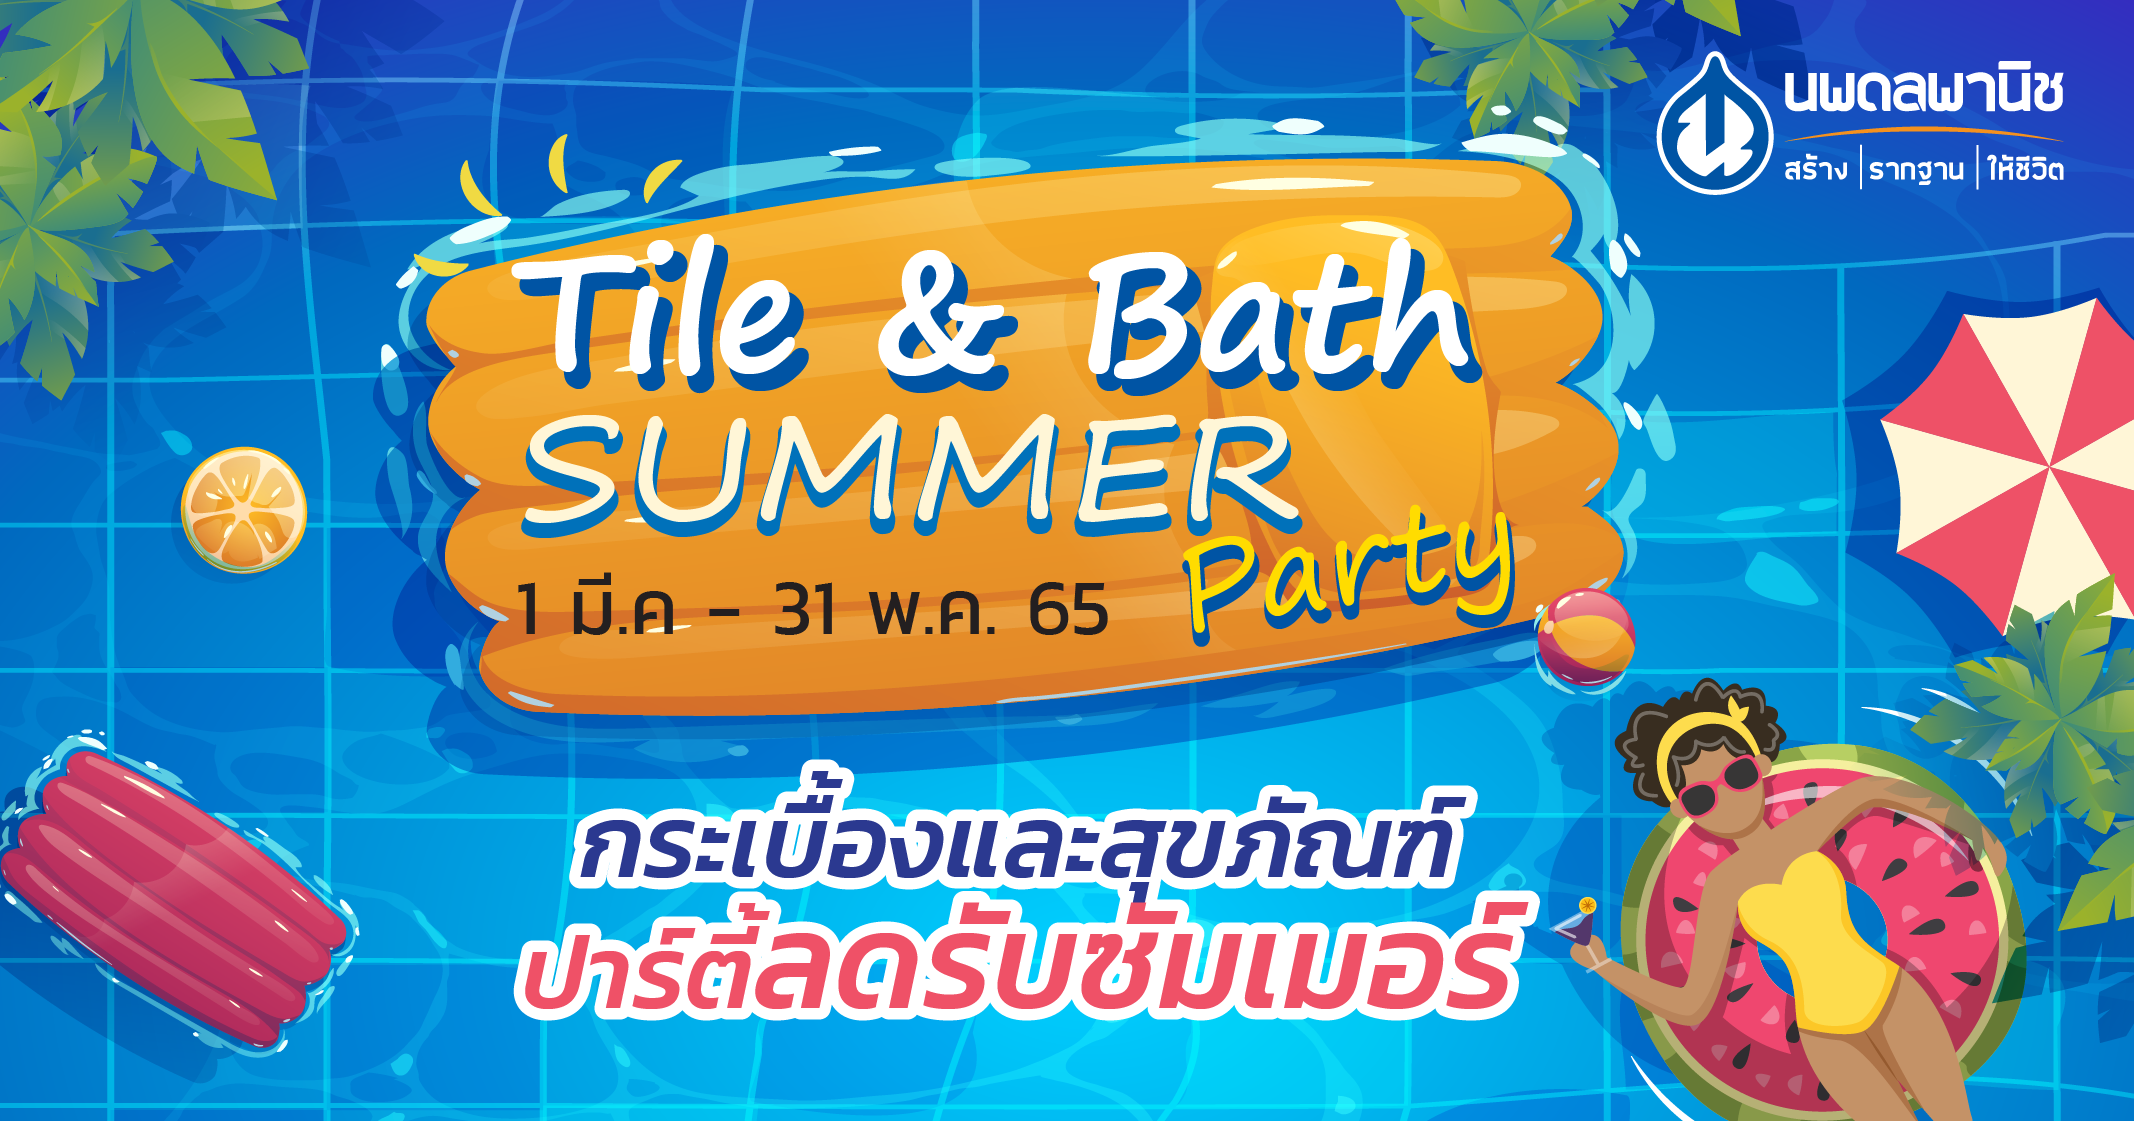 Tile & Bath Summer Party